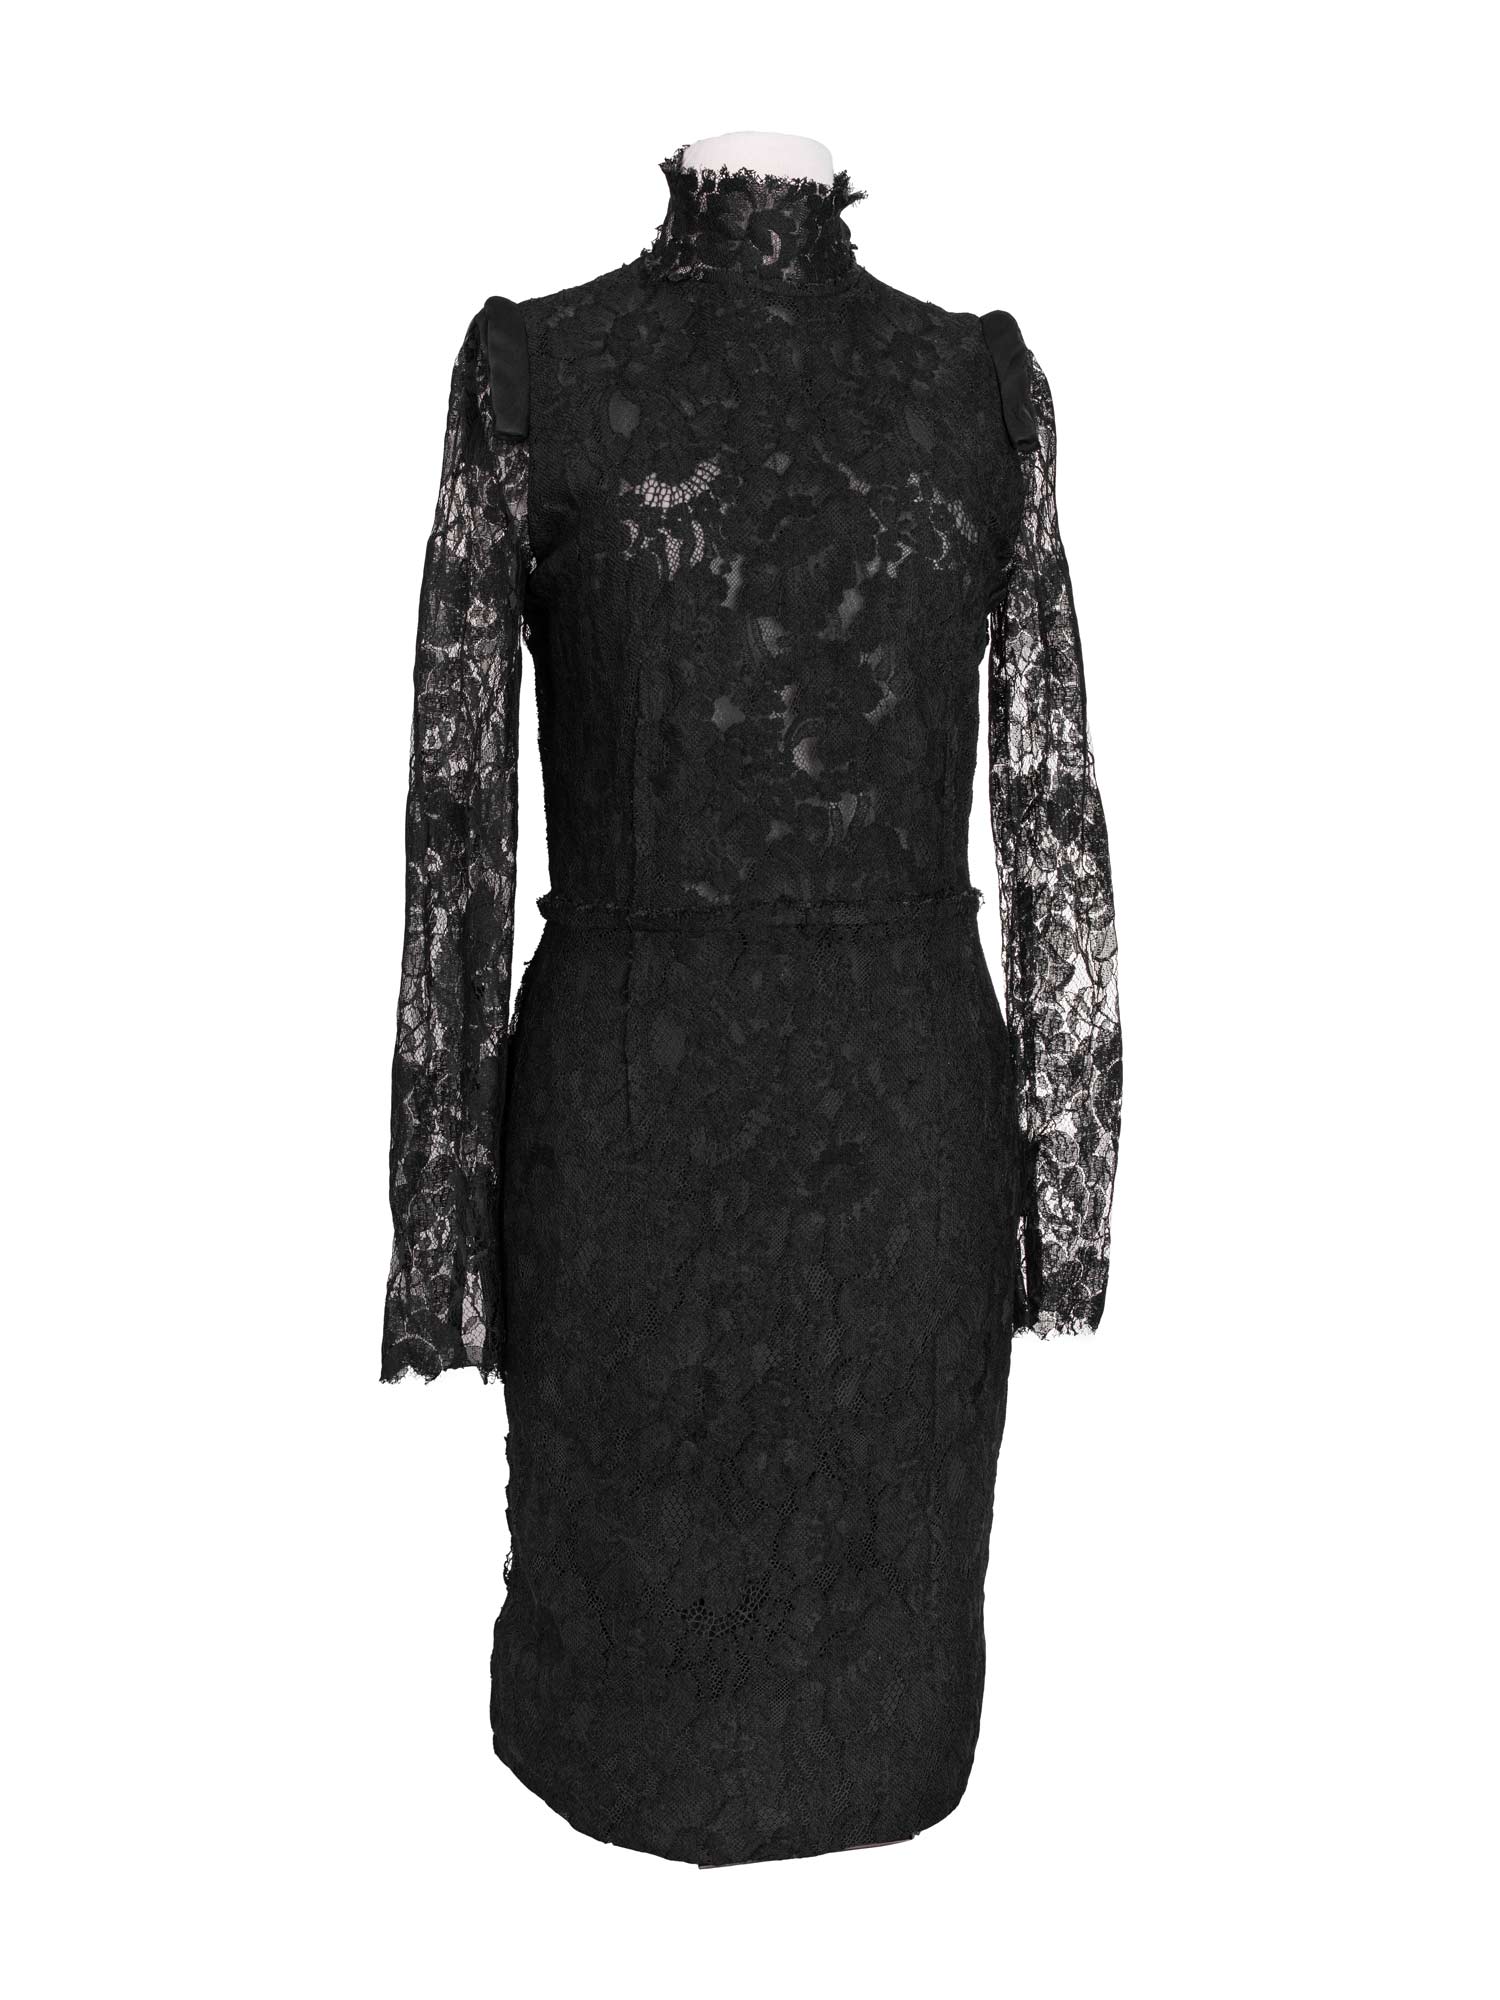 Lanvin Lace Long Sleeve Fringe Dress Black-designer resale